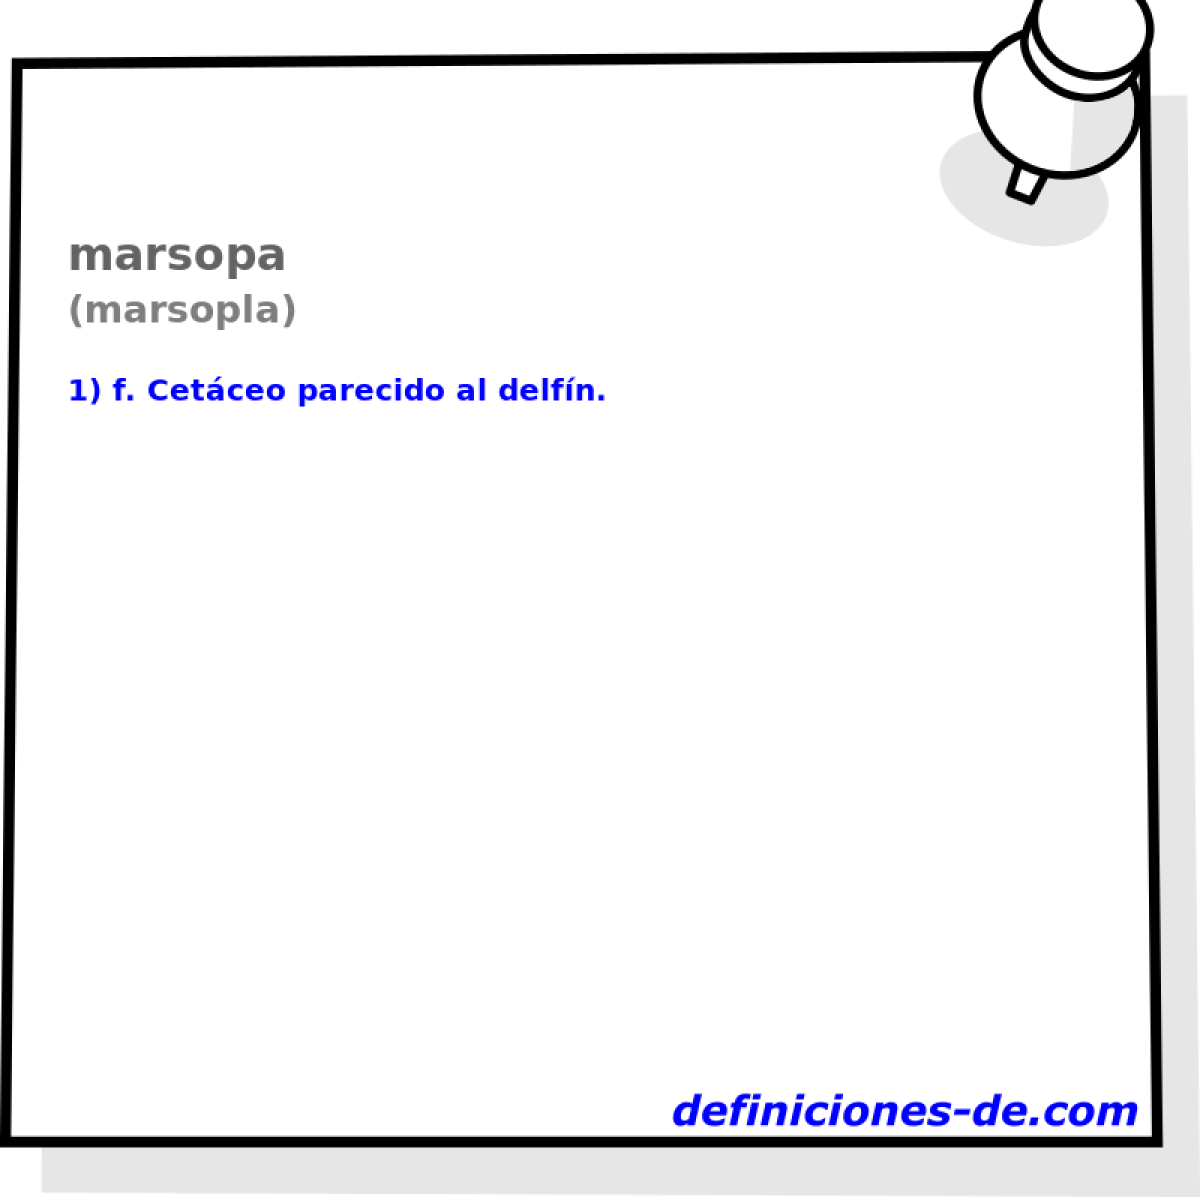 marsopa (marsopla)